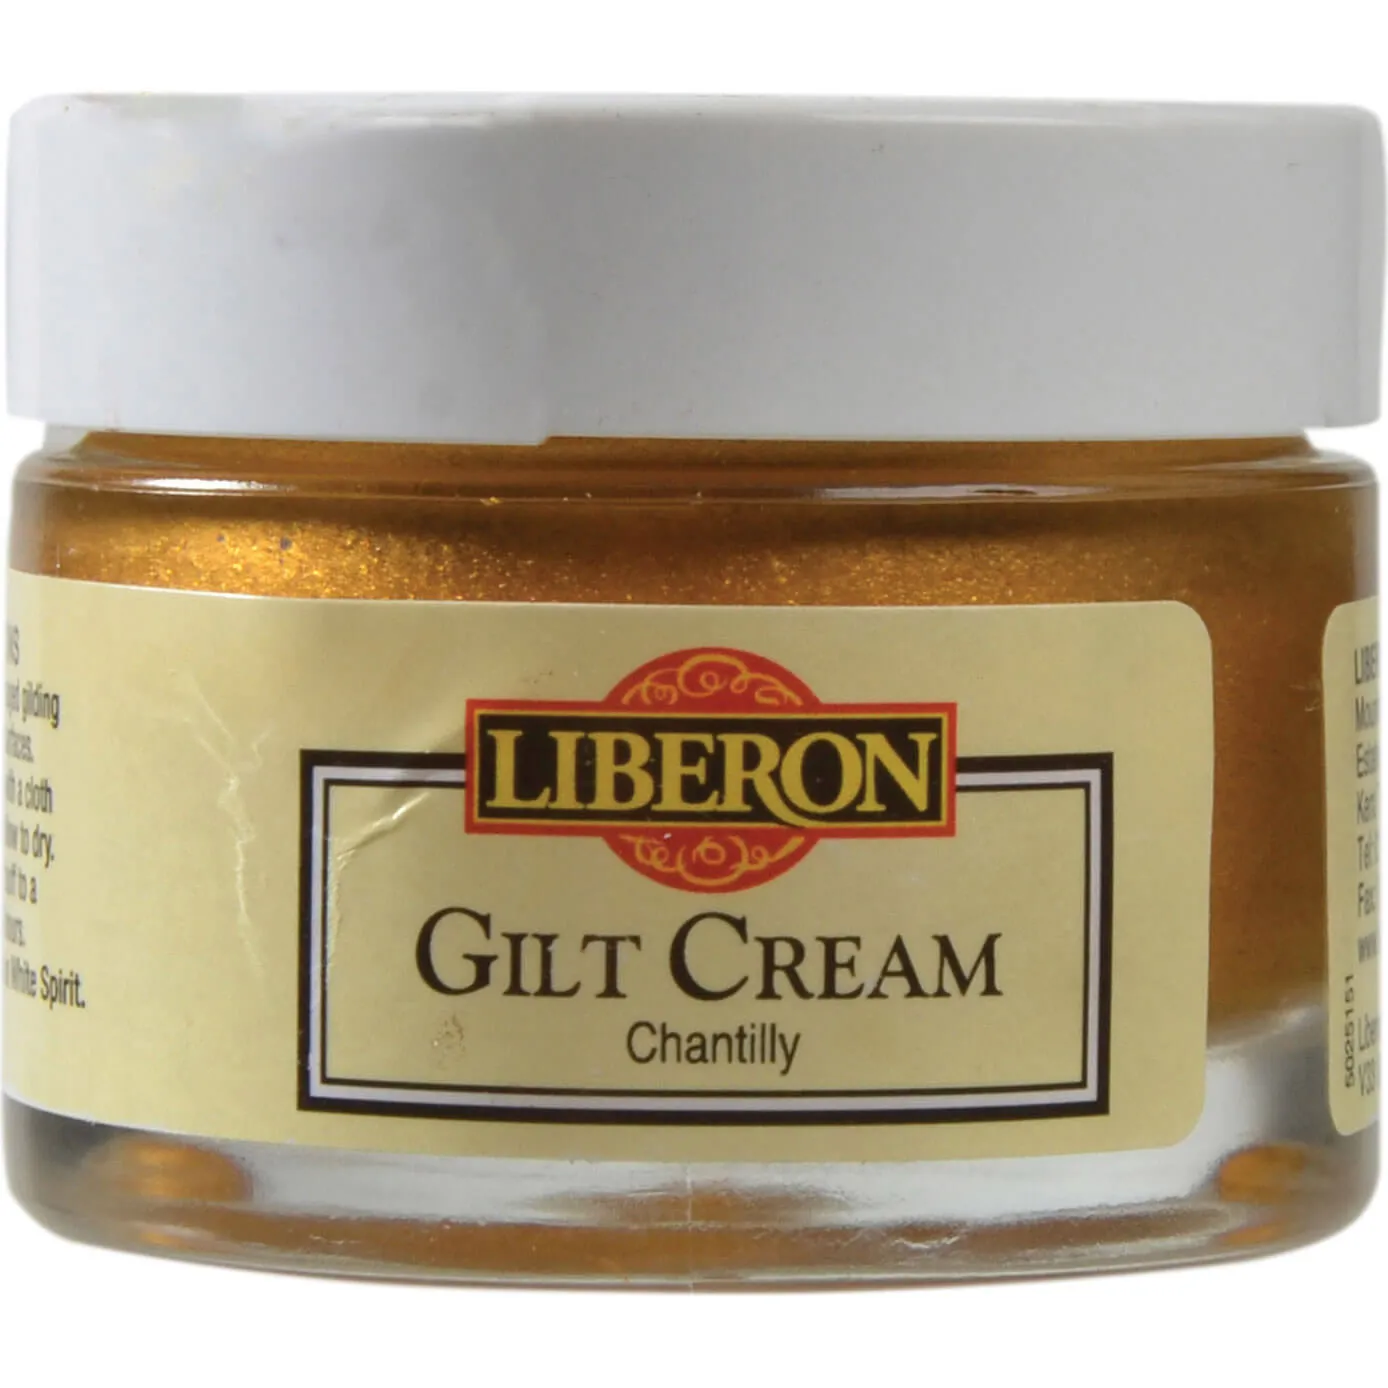 Liberon Gilt Cream - 30ml, Chantilly